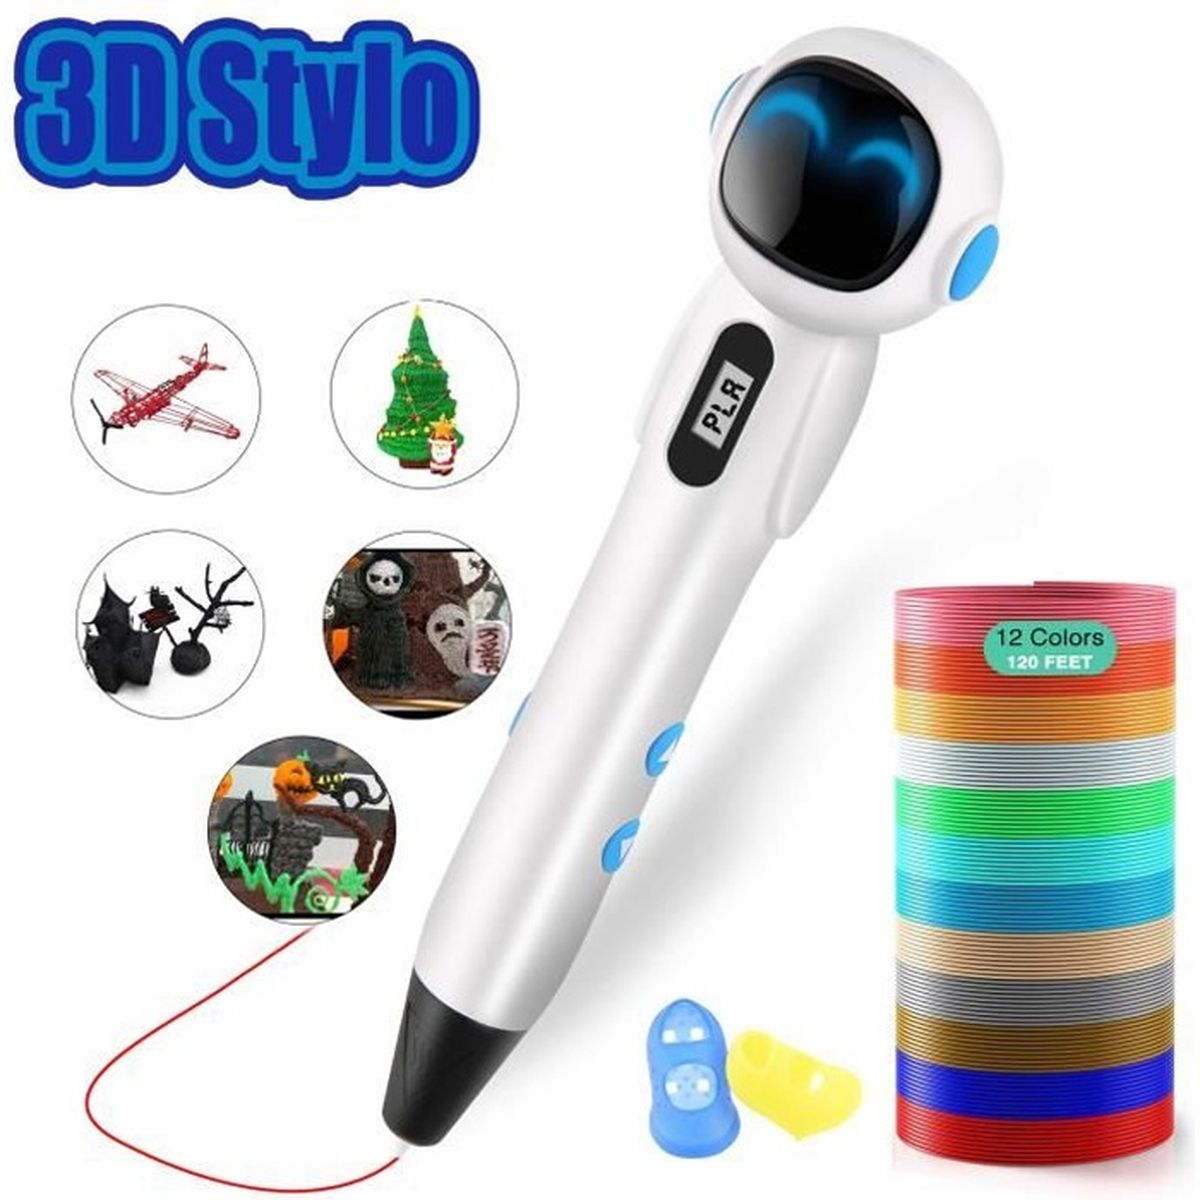 AeeYui Stylo 3D 3D Professionnel Pen avec écran LED Intelligent et Température Réglable/Vitesses Stylo d'Impression 3D Compatible avec Filament PLA/ABS,Cadeau Parfait pour Enfant et Adulte 